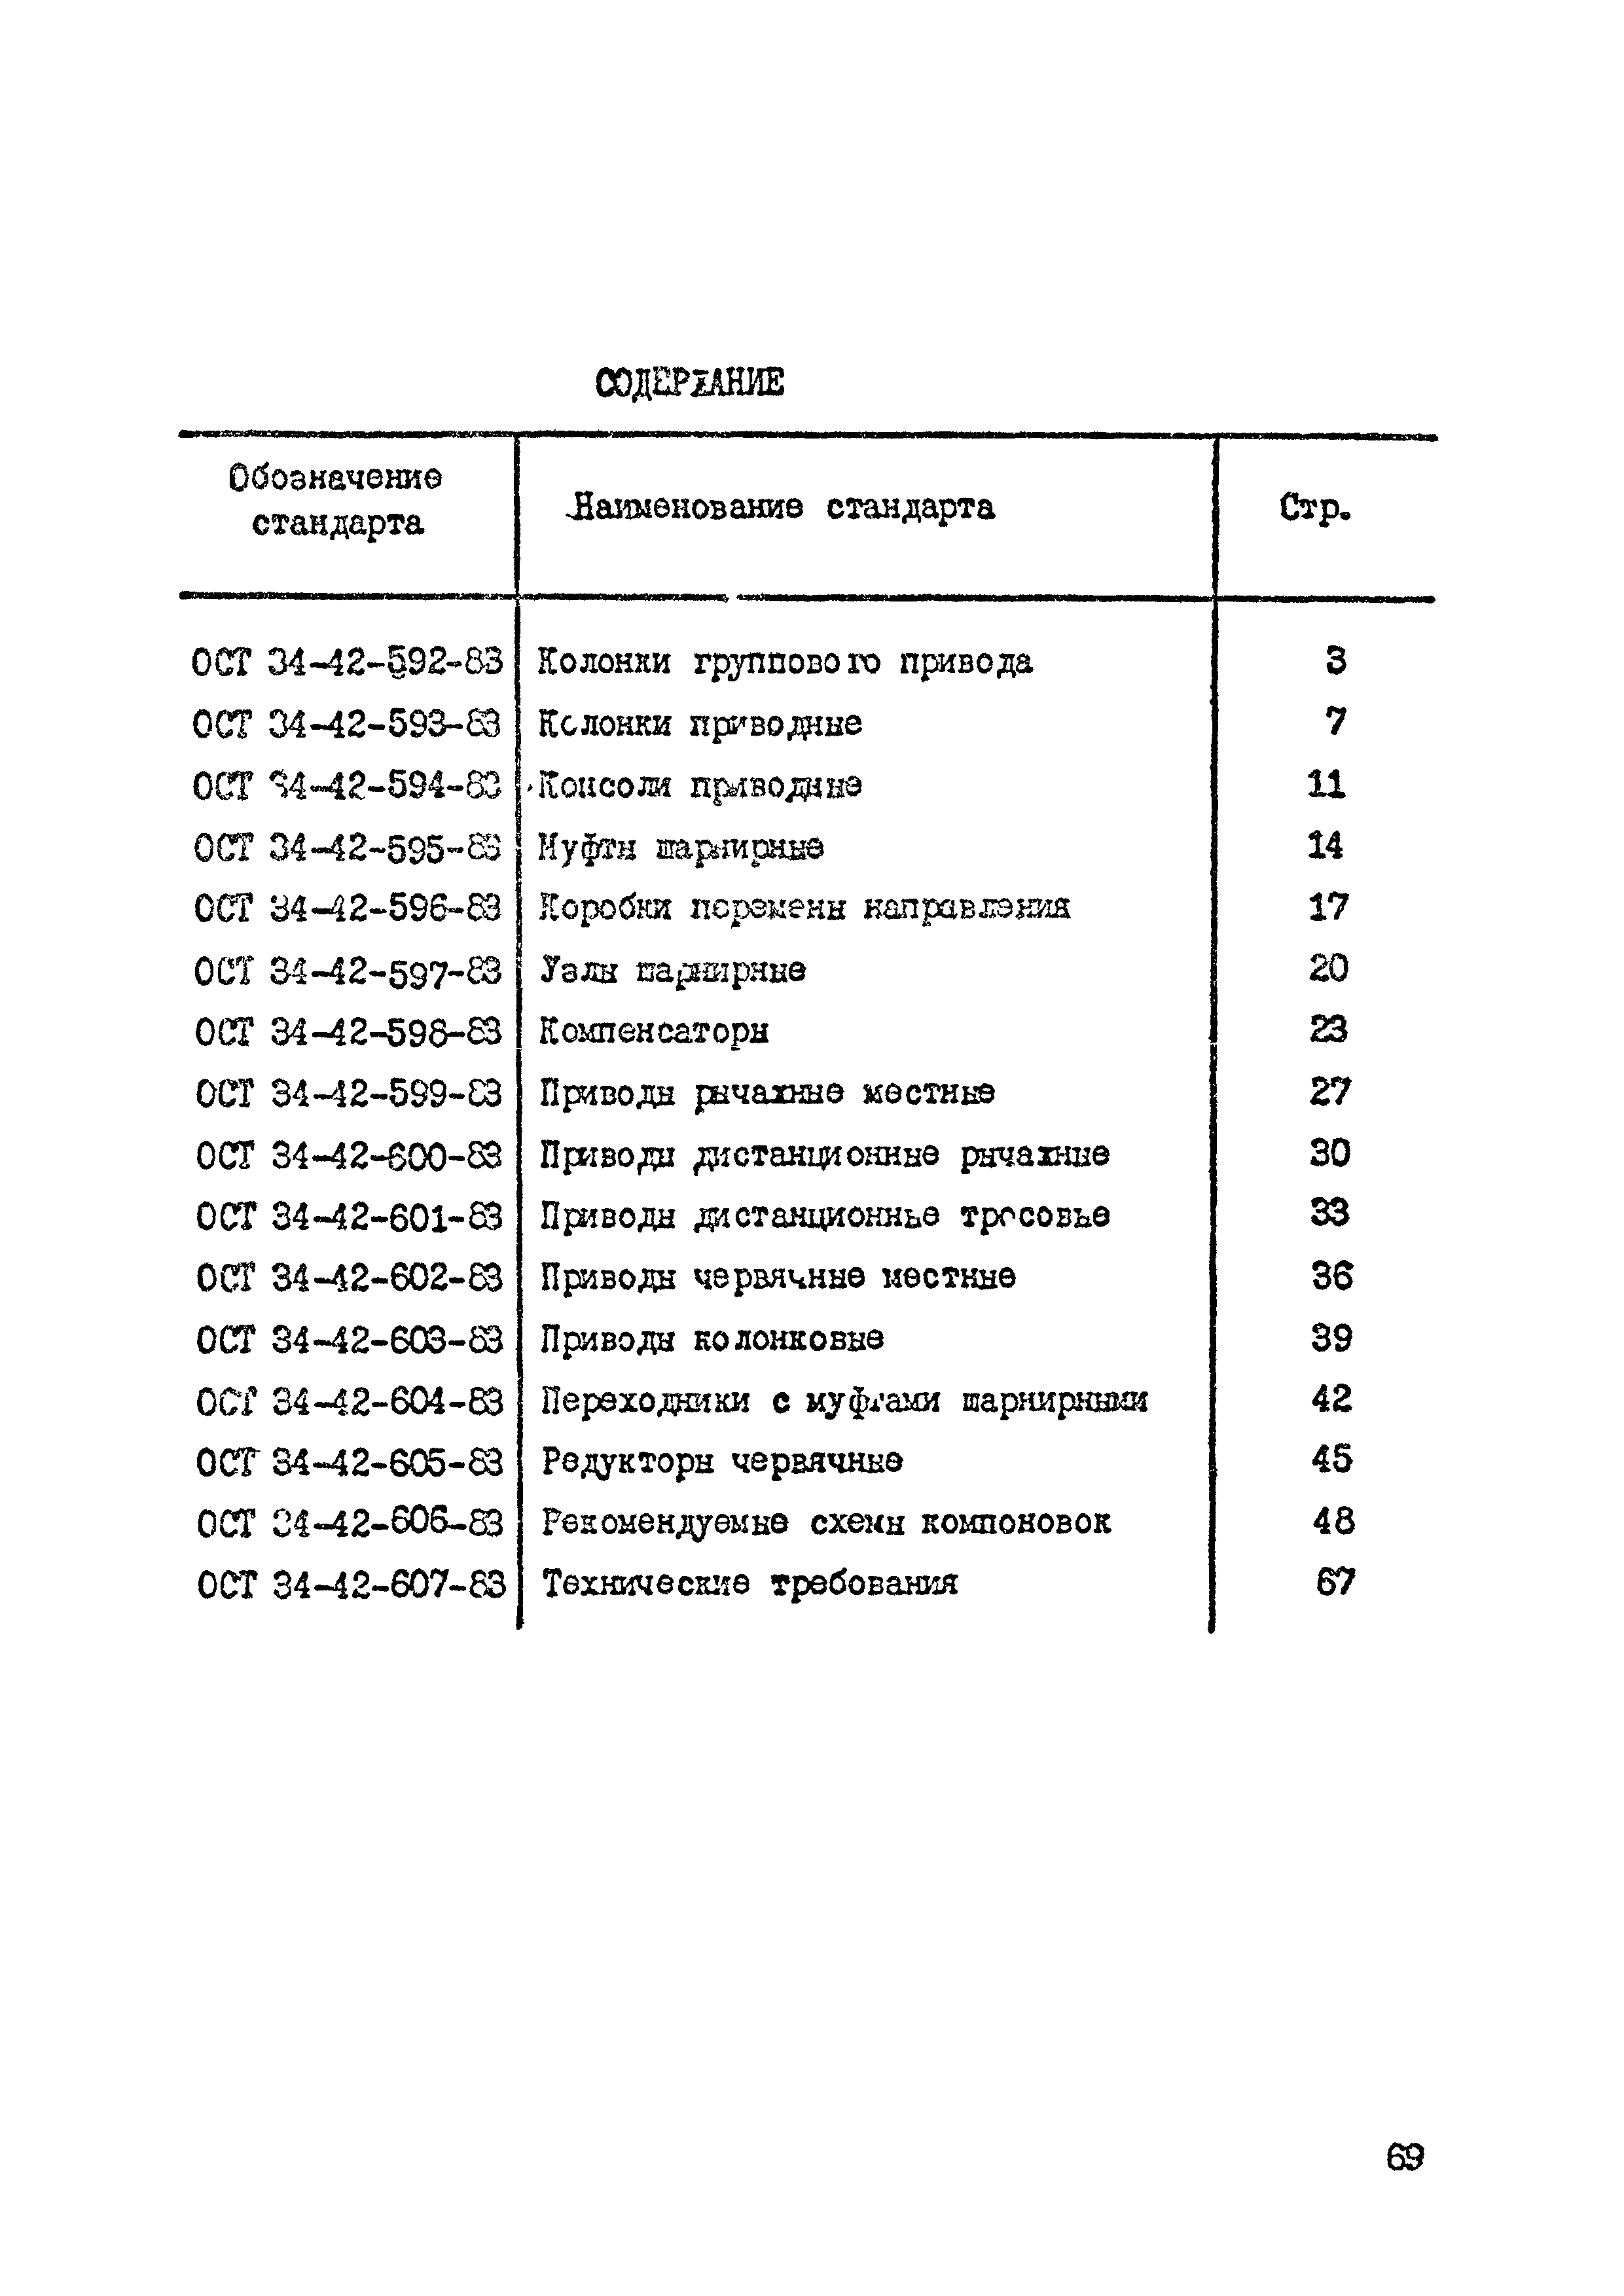 ОСТ 34-42-605-83